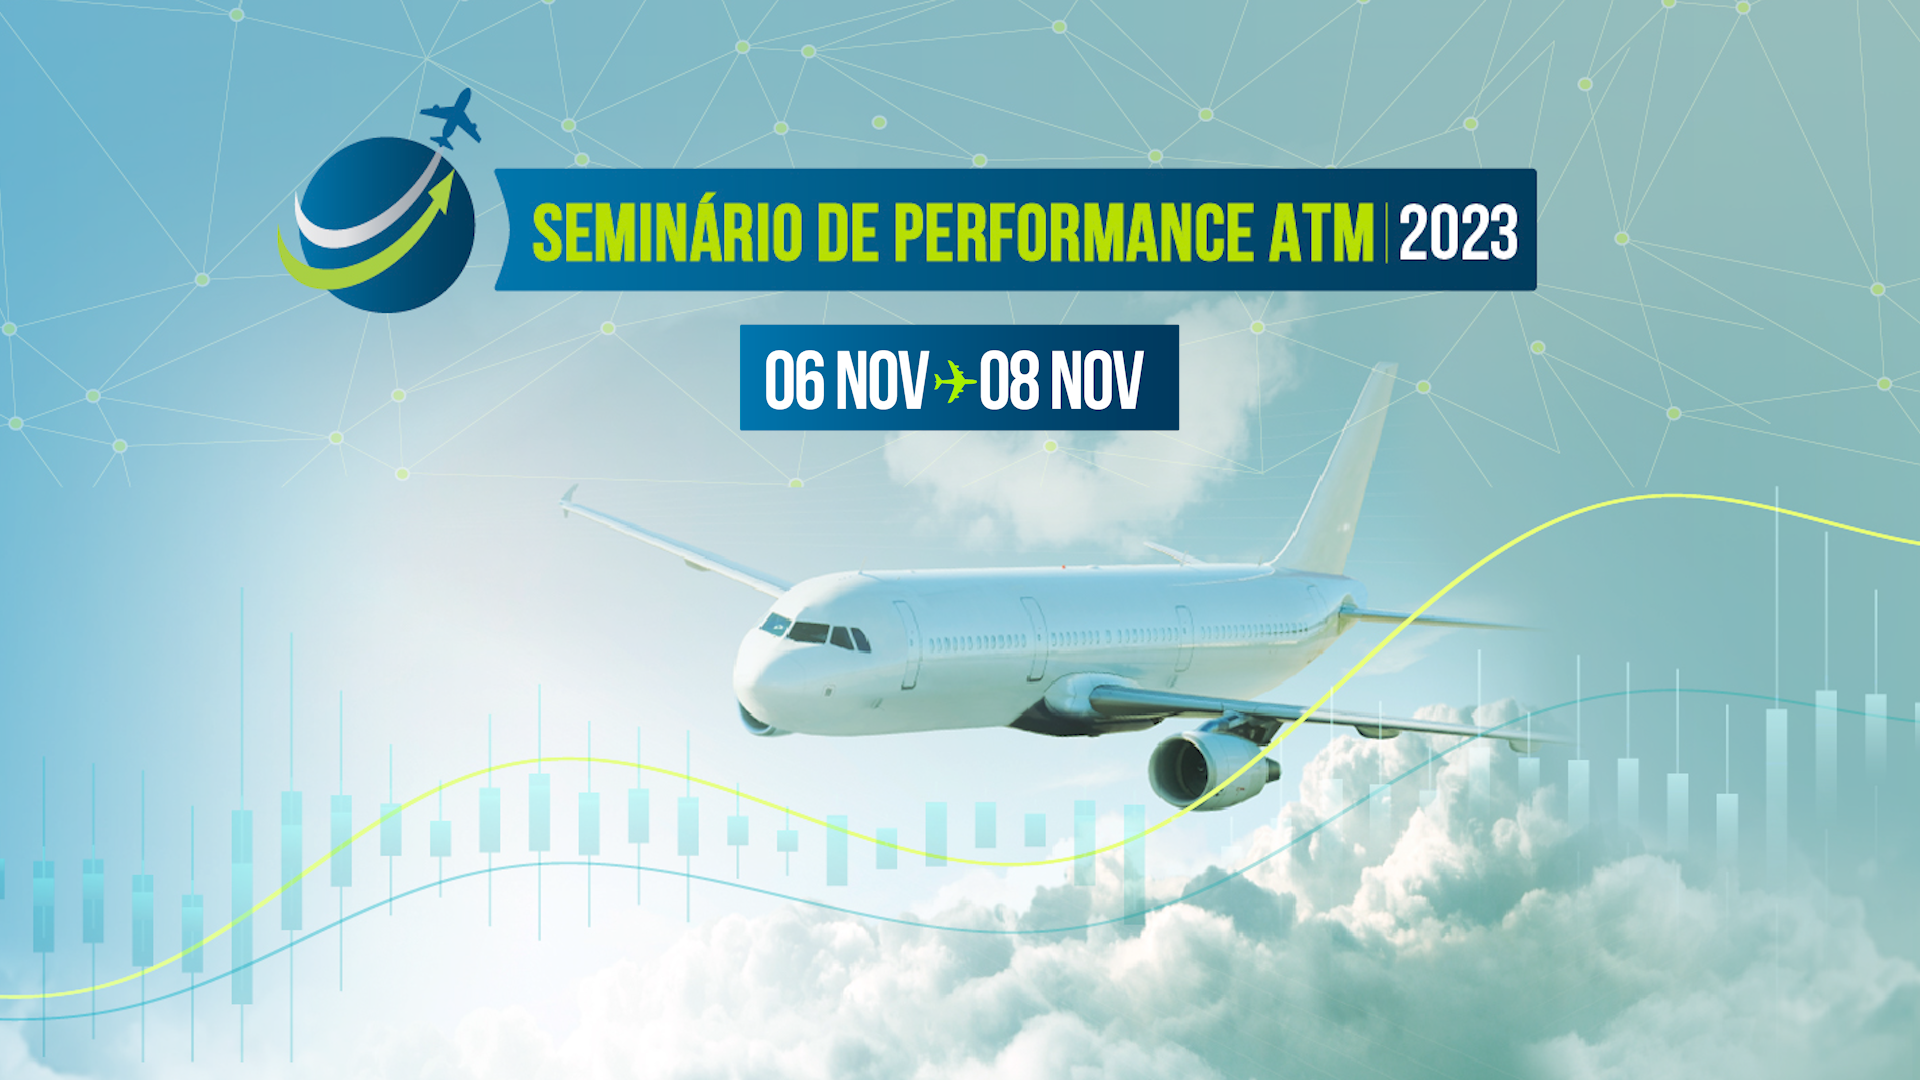 Seminário de Performance ATM 2023: inscrições abertas até 30 de outubro